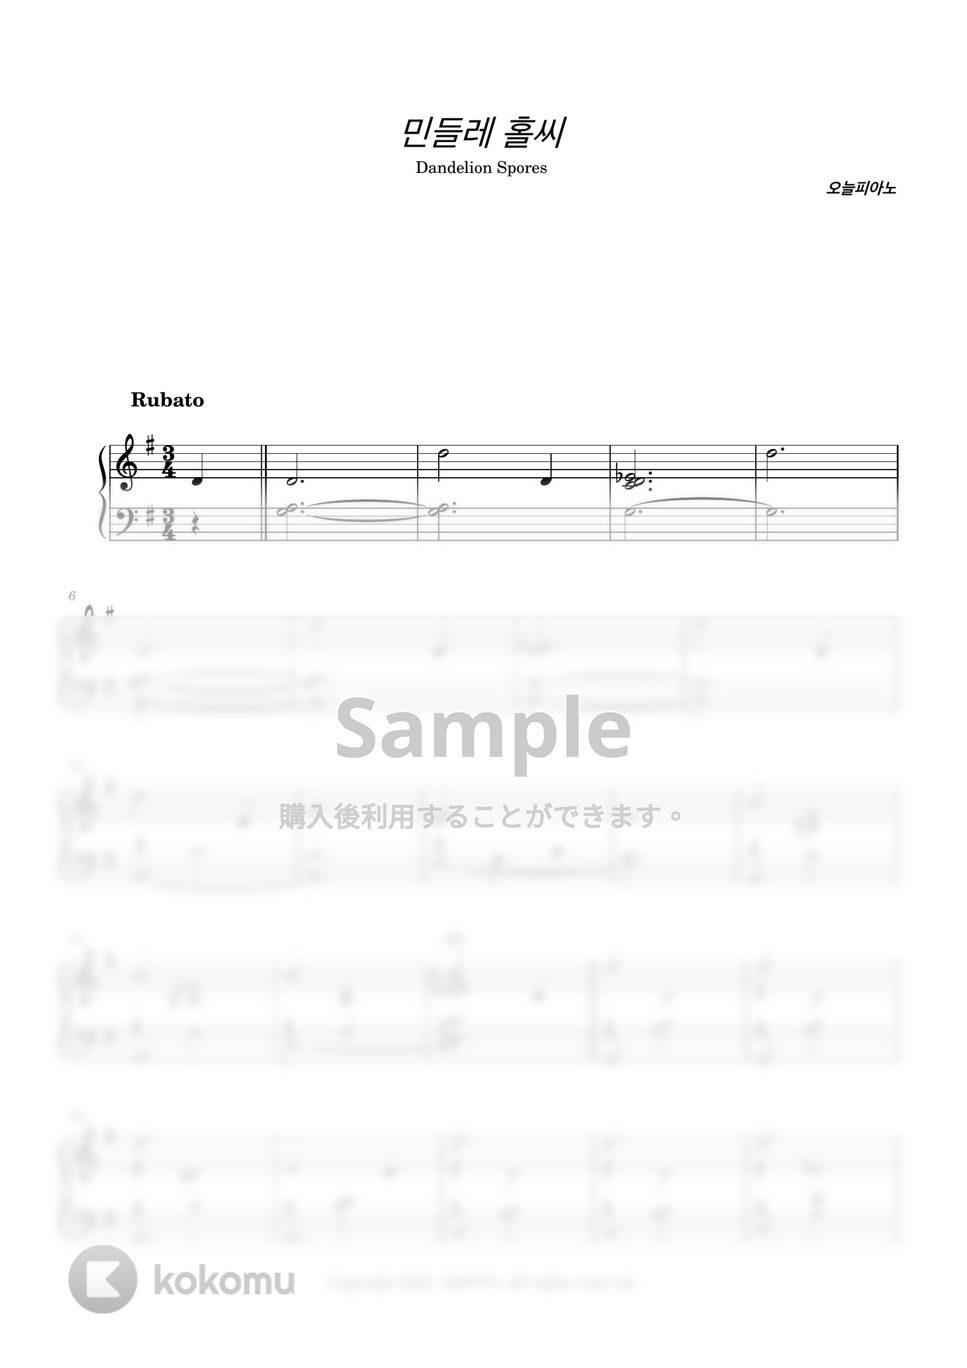 今日ピアノ(Oneul Piano) - たんぽぽ胞子 (Dandelion Spores)